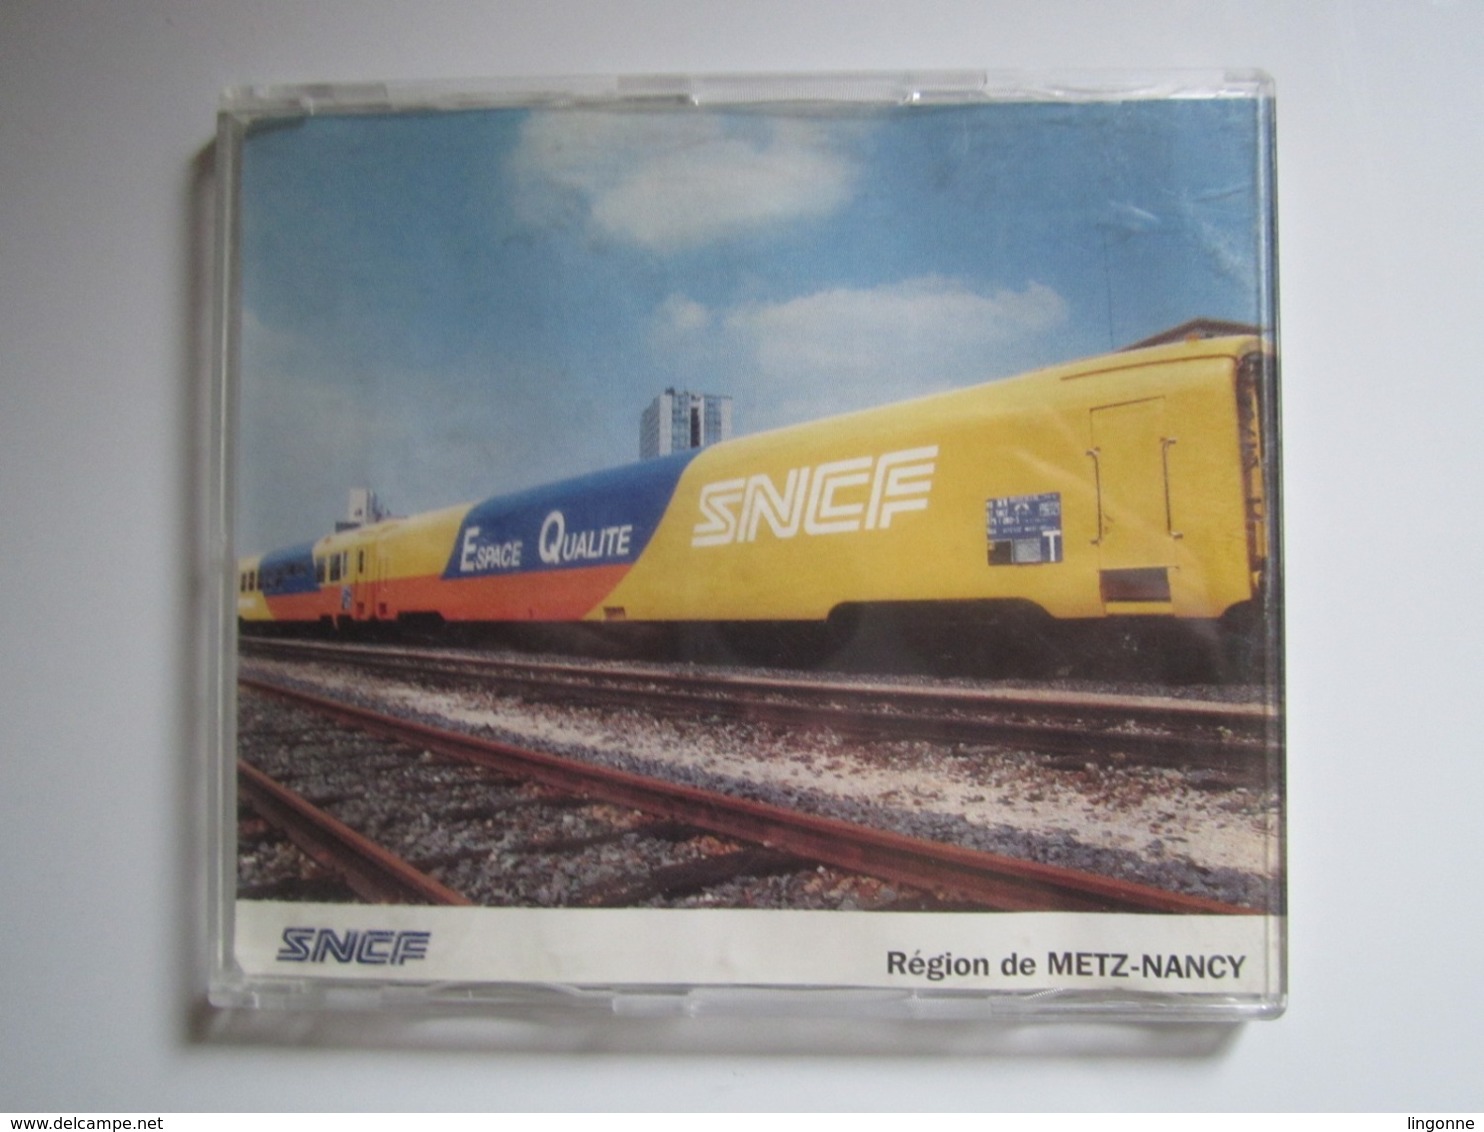 RARE CD SNCF 1992 Région De METZ-NANCY ESPACE QUALITÉ 1) ROCK AND RAIL 2) CA DECOIFFE A LA SNCF - Filmmusik